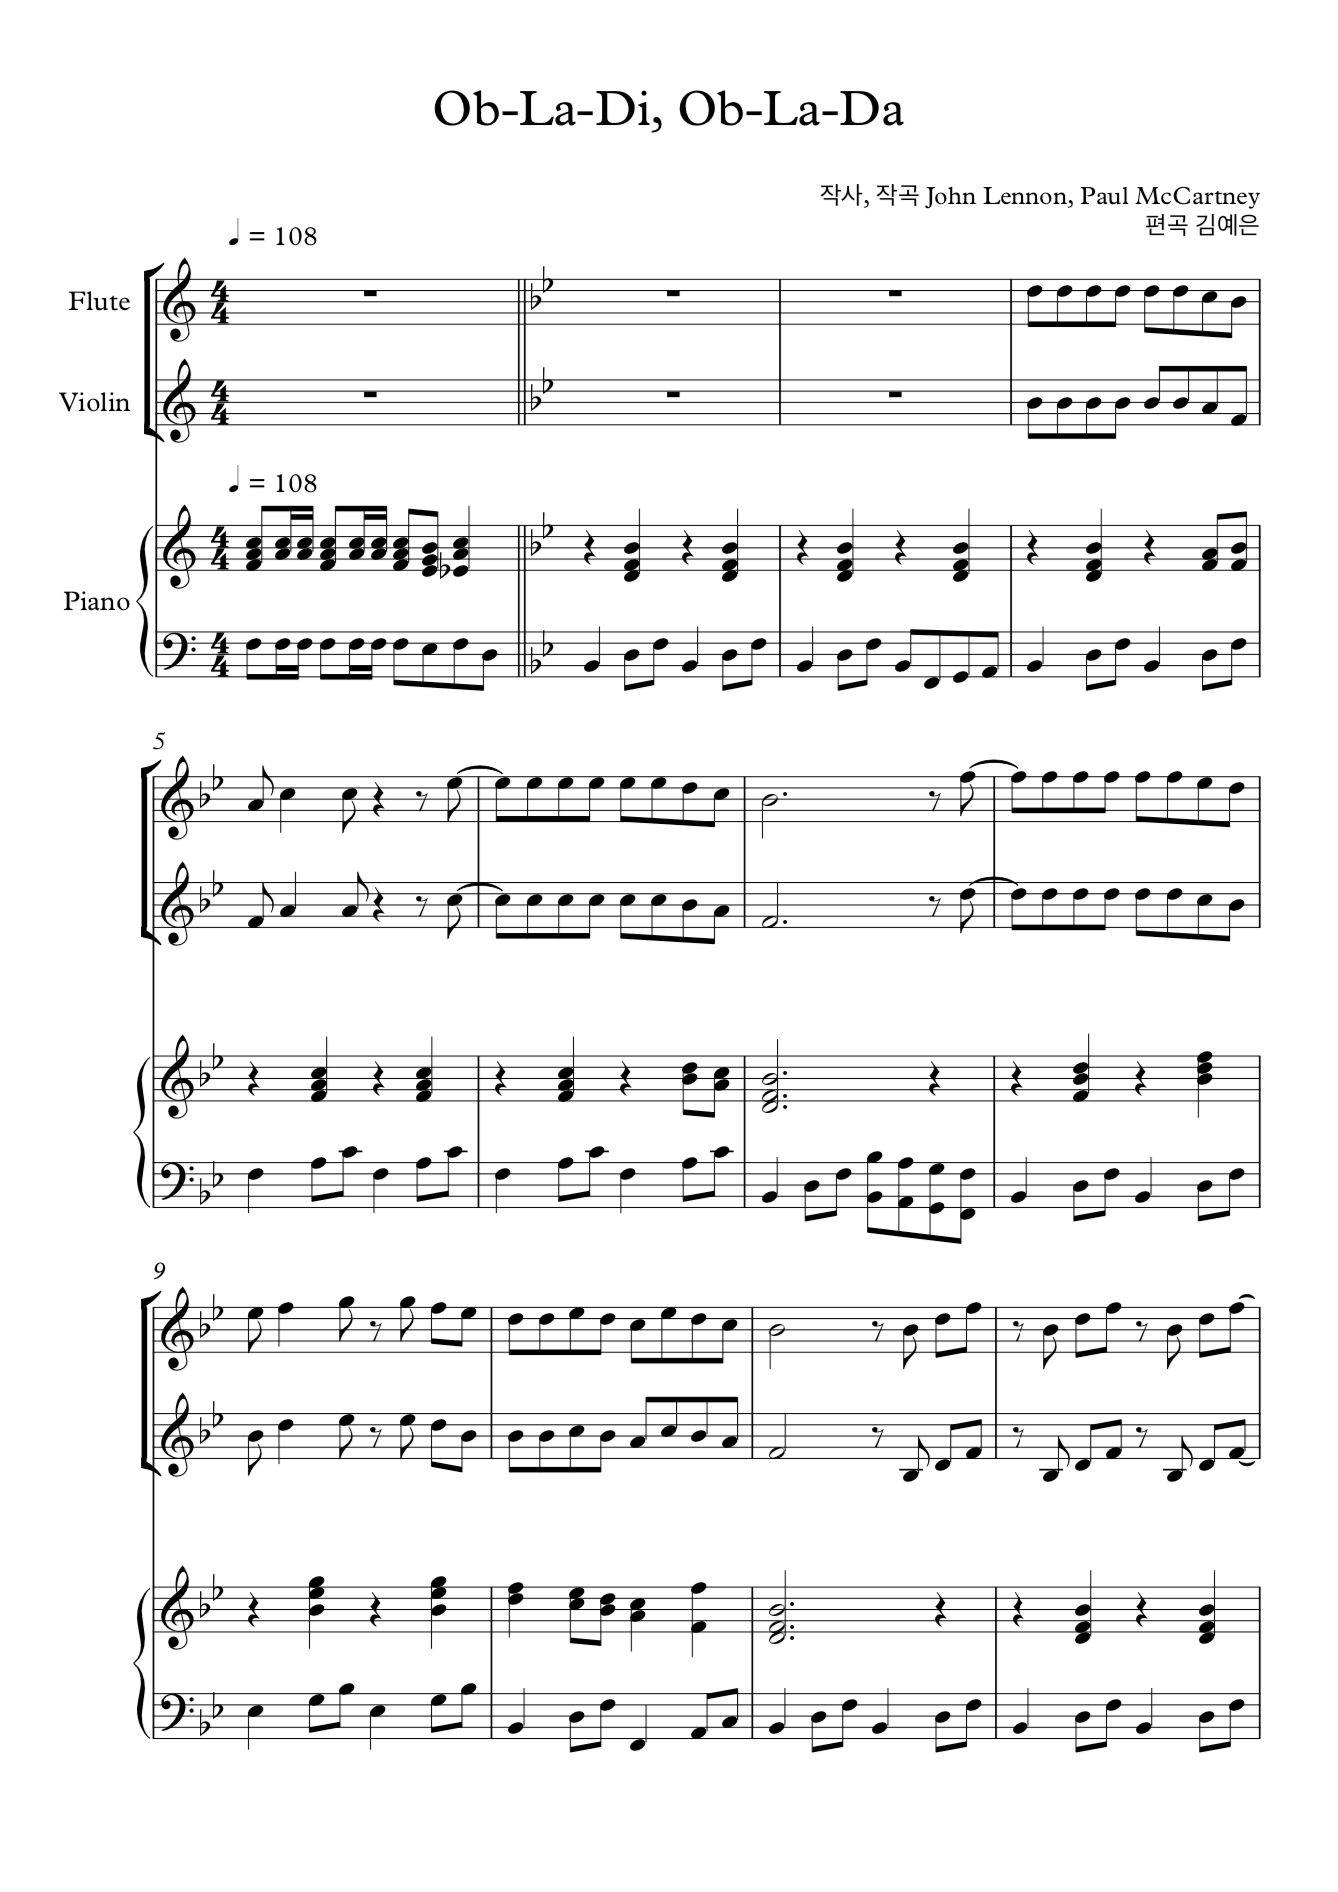 Ob-La-Di, Ob-La-Da 오블라디 오블라다 비틀즈 플룻 바이올린 2중주 악보